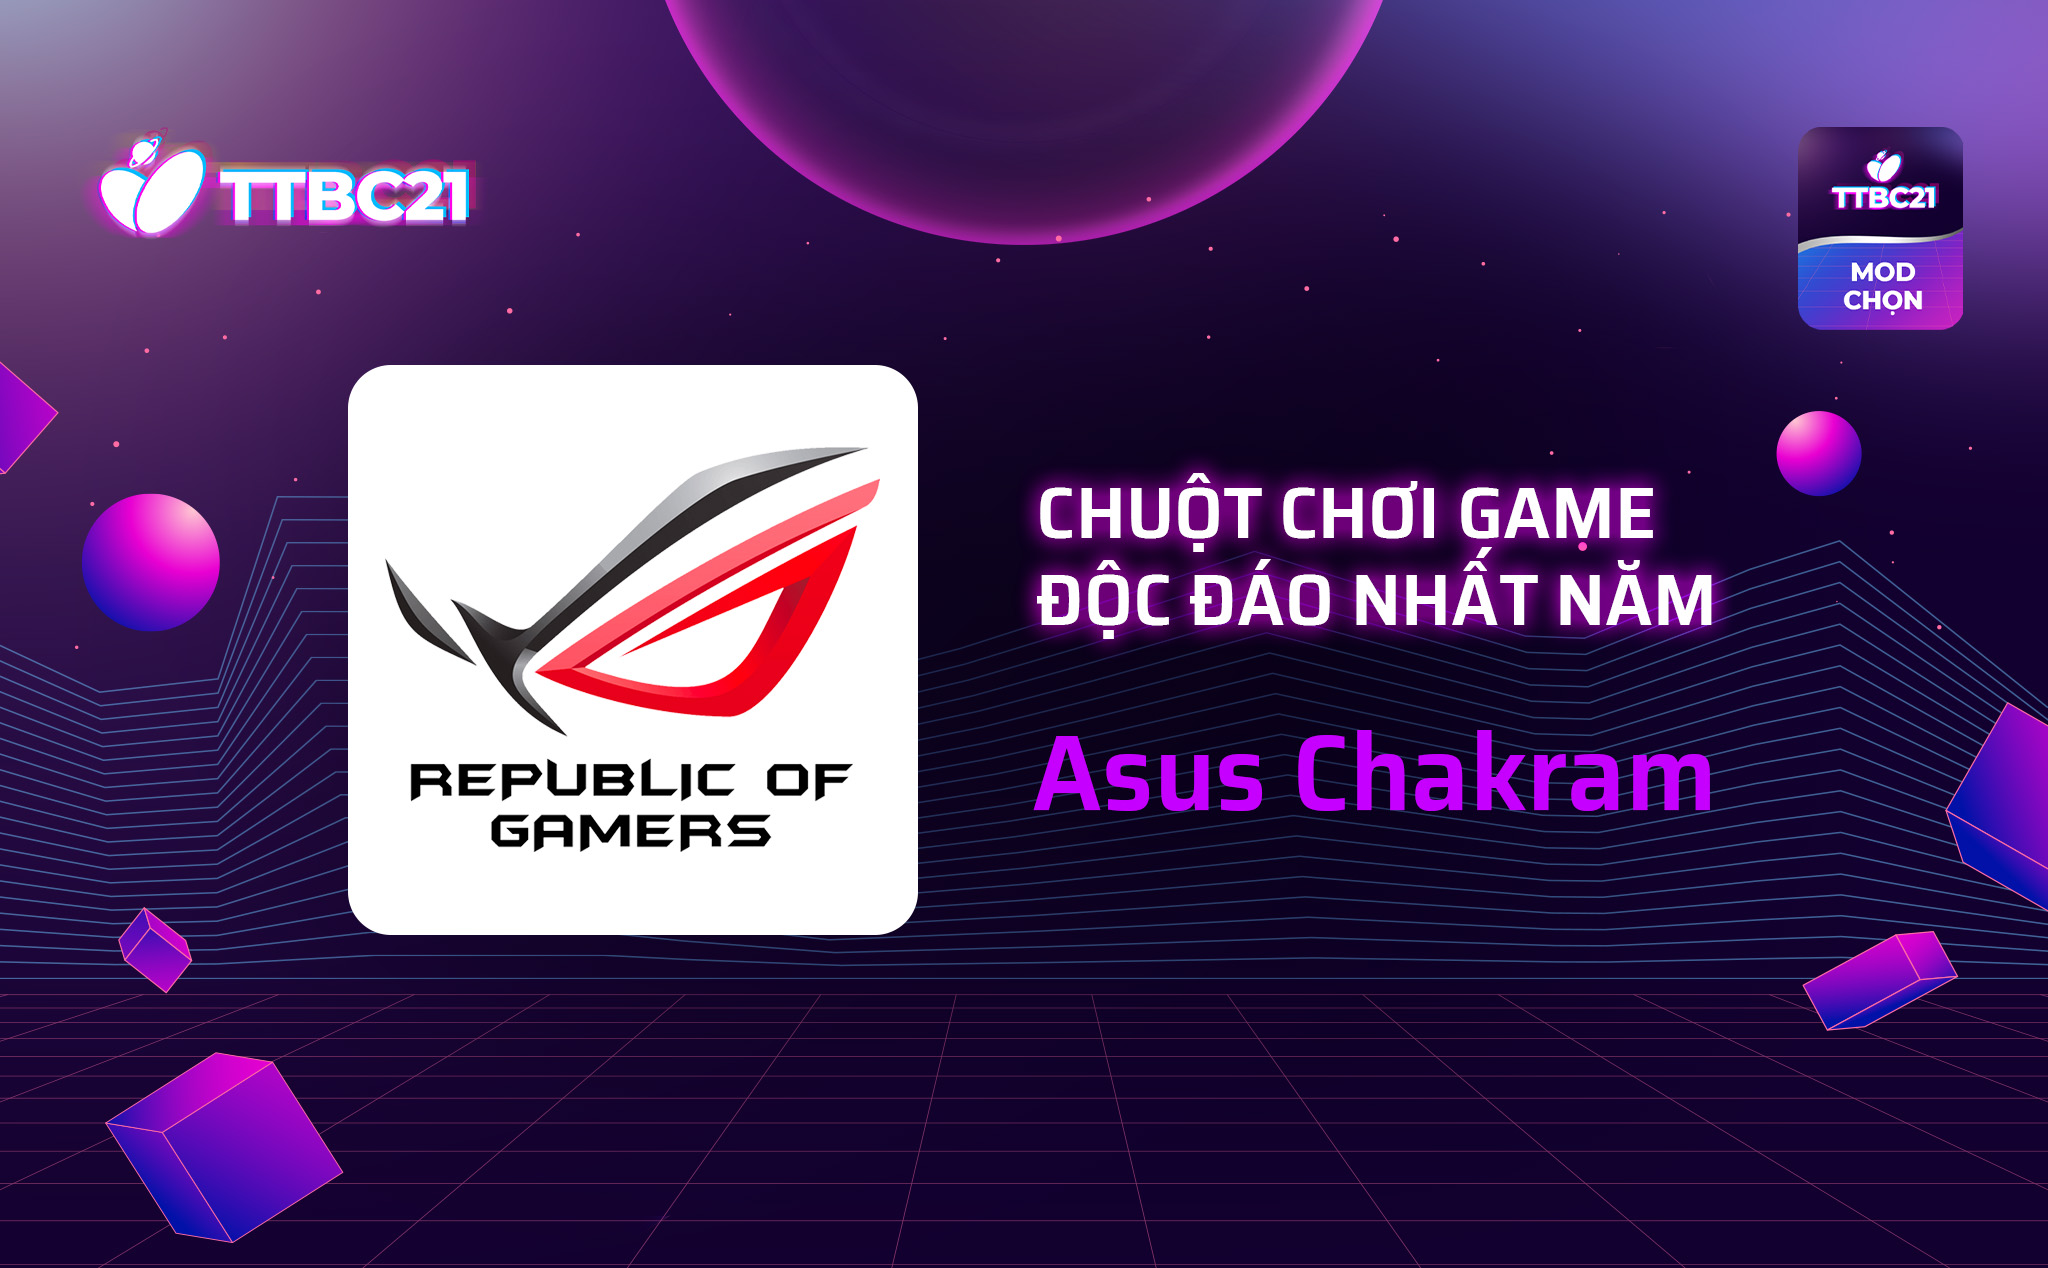 #TTBC21 – Mod Choice: Chuột chơi game độc đáo nhất năm: Asus Chakram